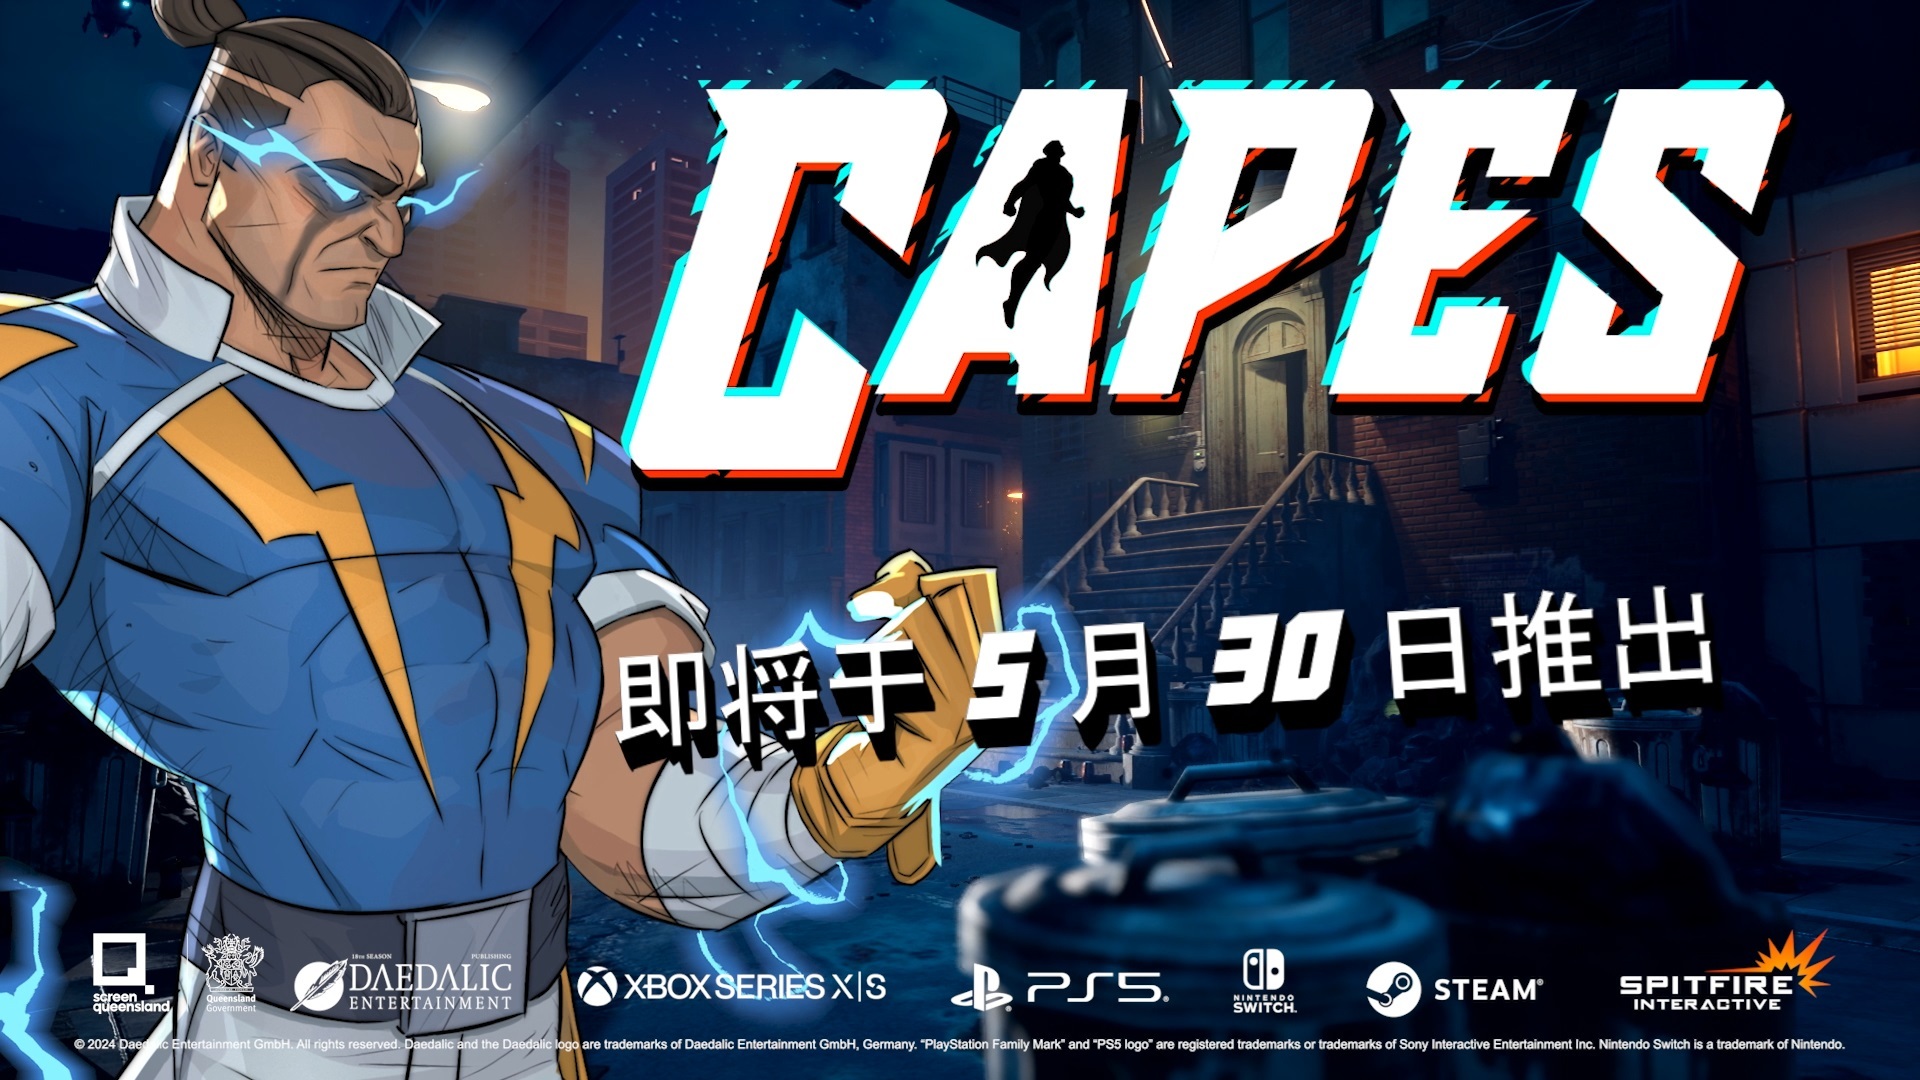 回合制策略游戏《正义英雄 Capes》公开两支新英雄预告片